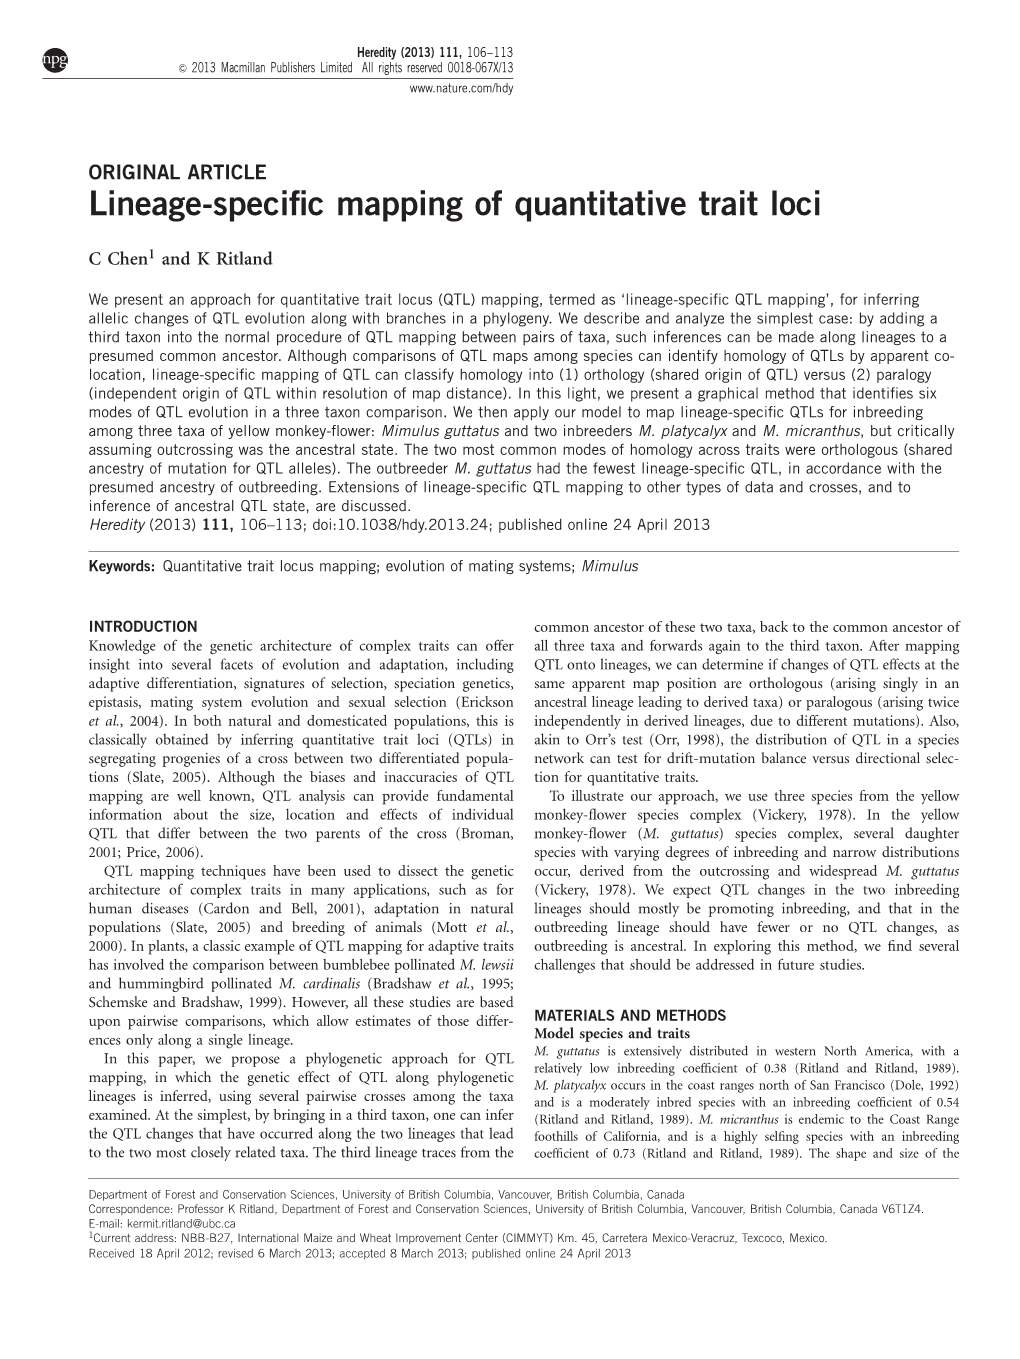 Lineage-Specific Mapping of Quantitative Trait Loci